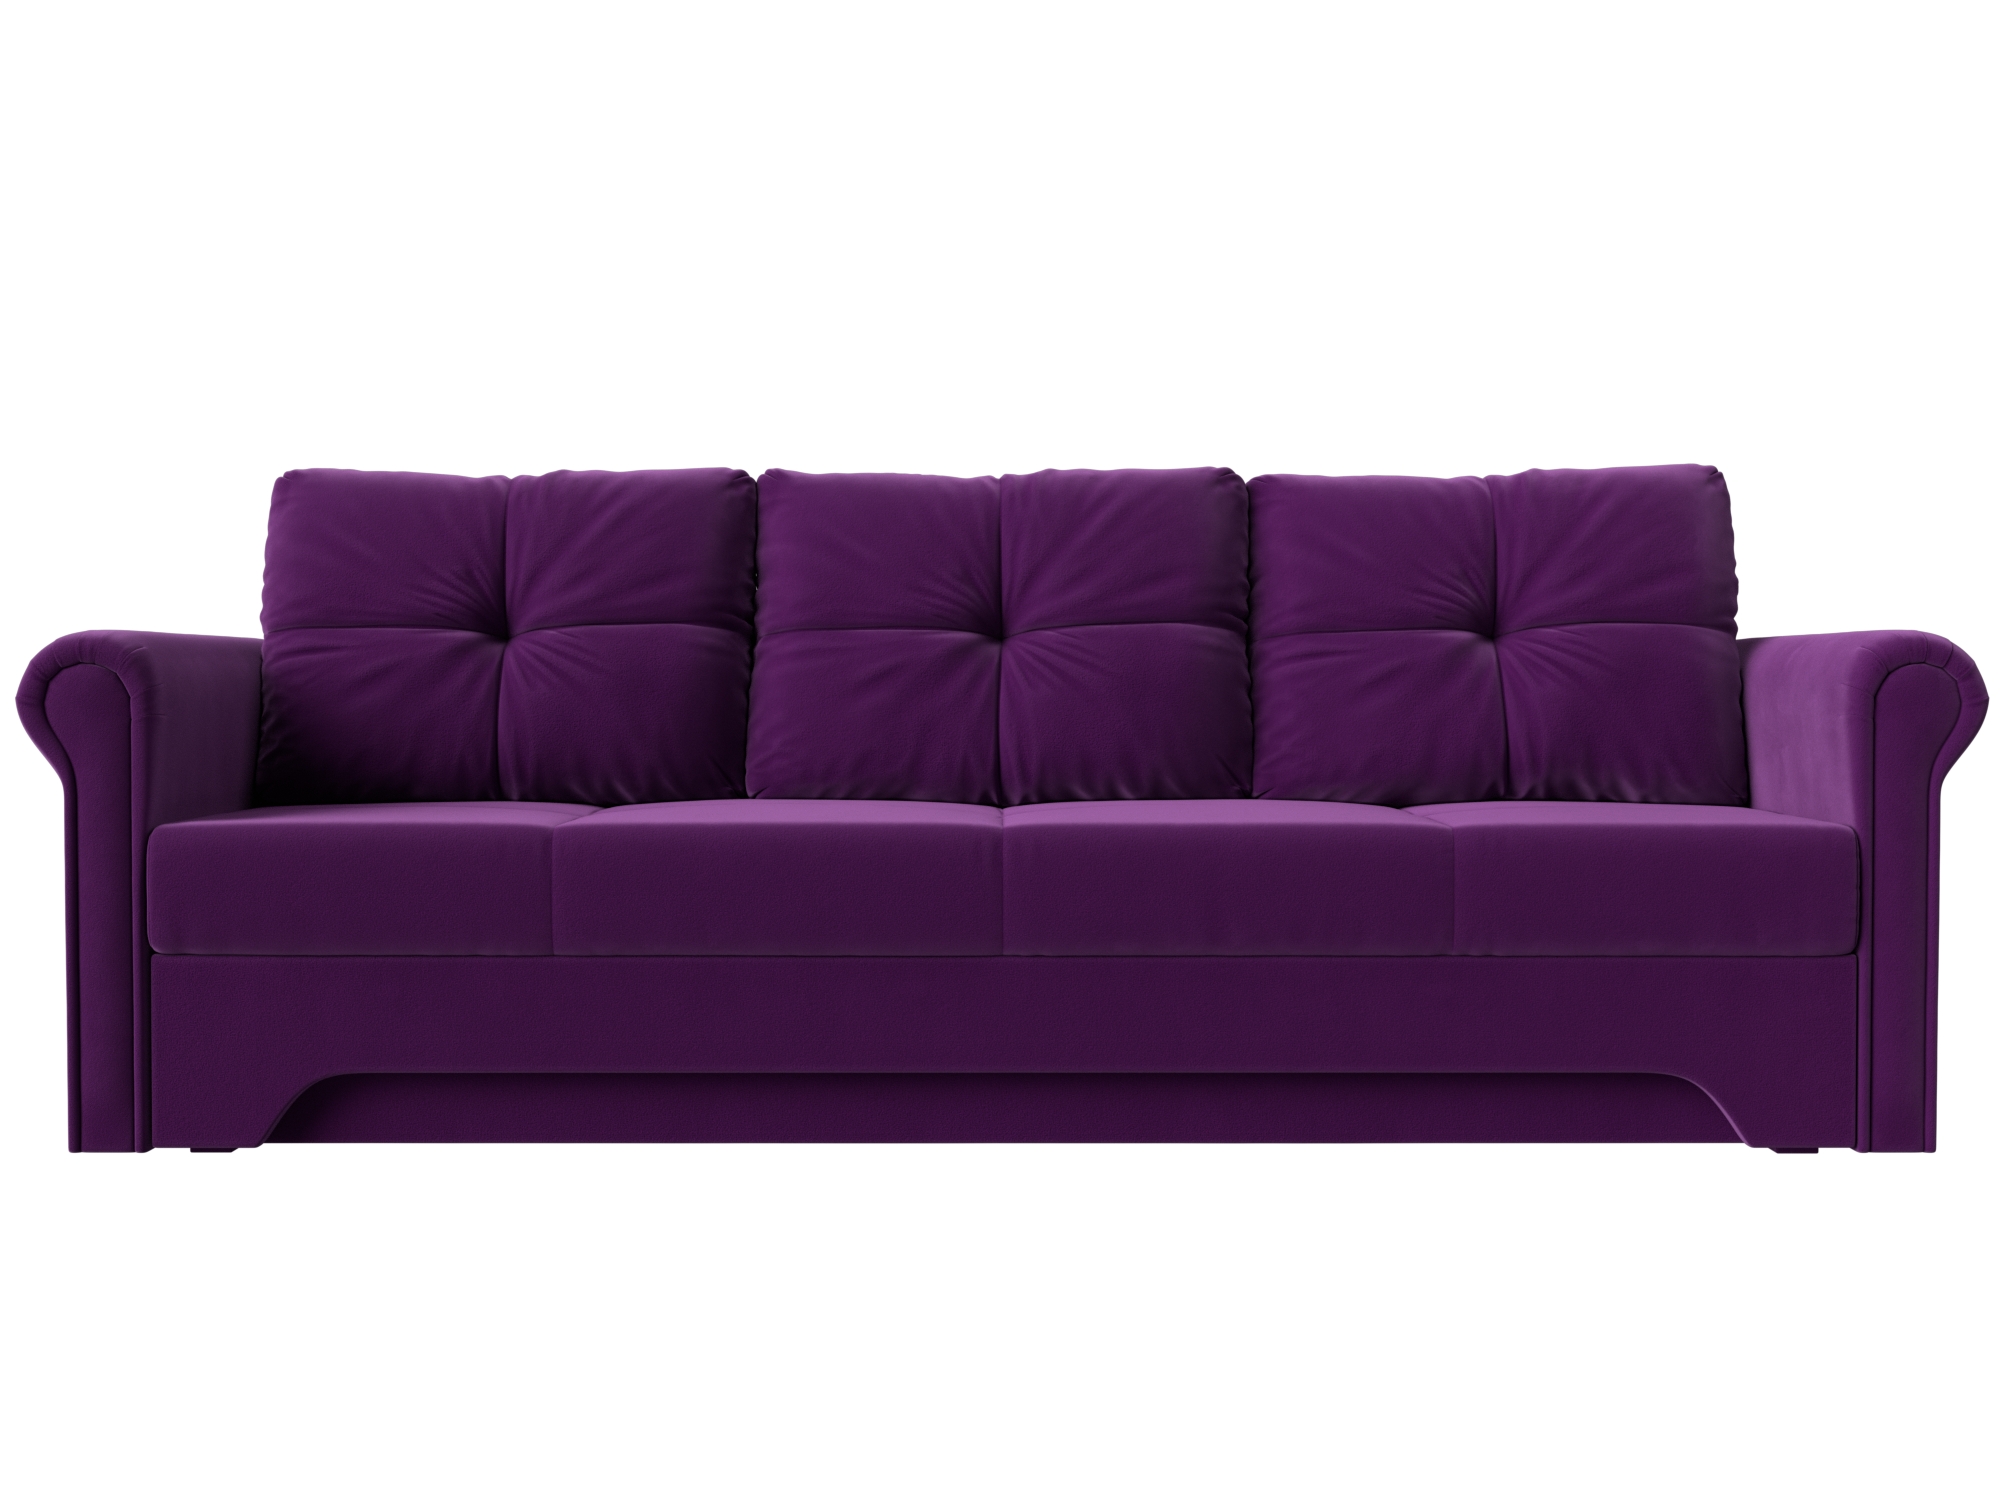 Диван Европа MebelVia , Фиолетовый, Микровельвет, ДСП, ЛДСП, Брус диван еврокнижка мебелико европа микровельвет фиолетово черный